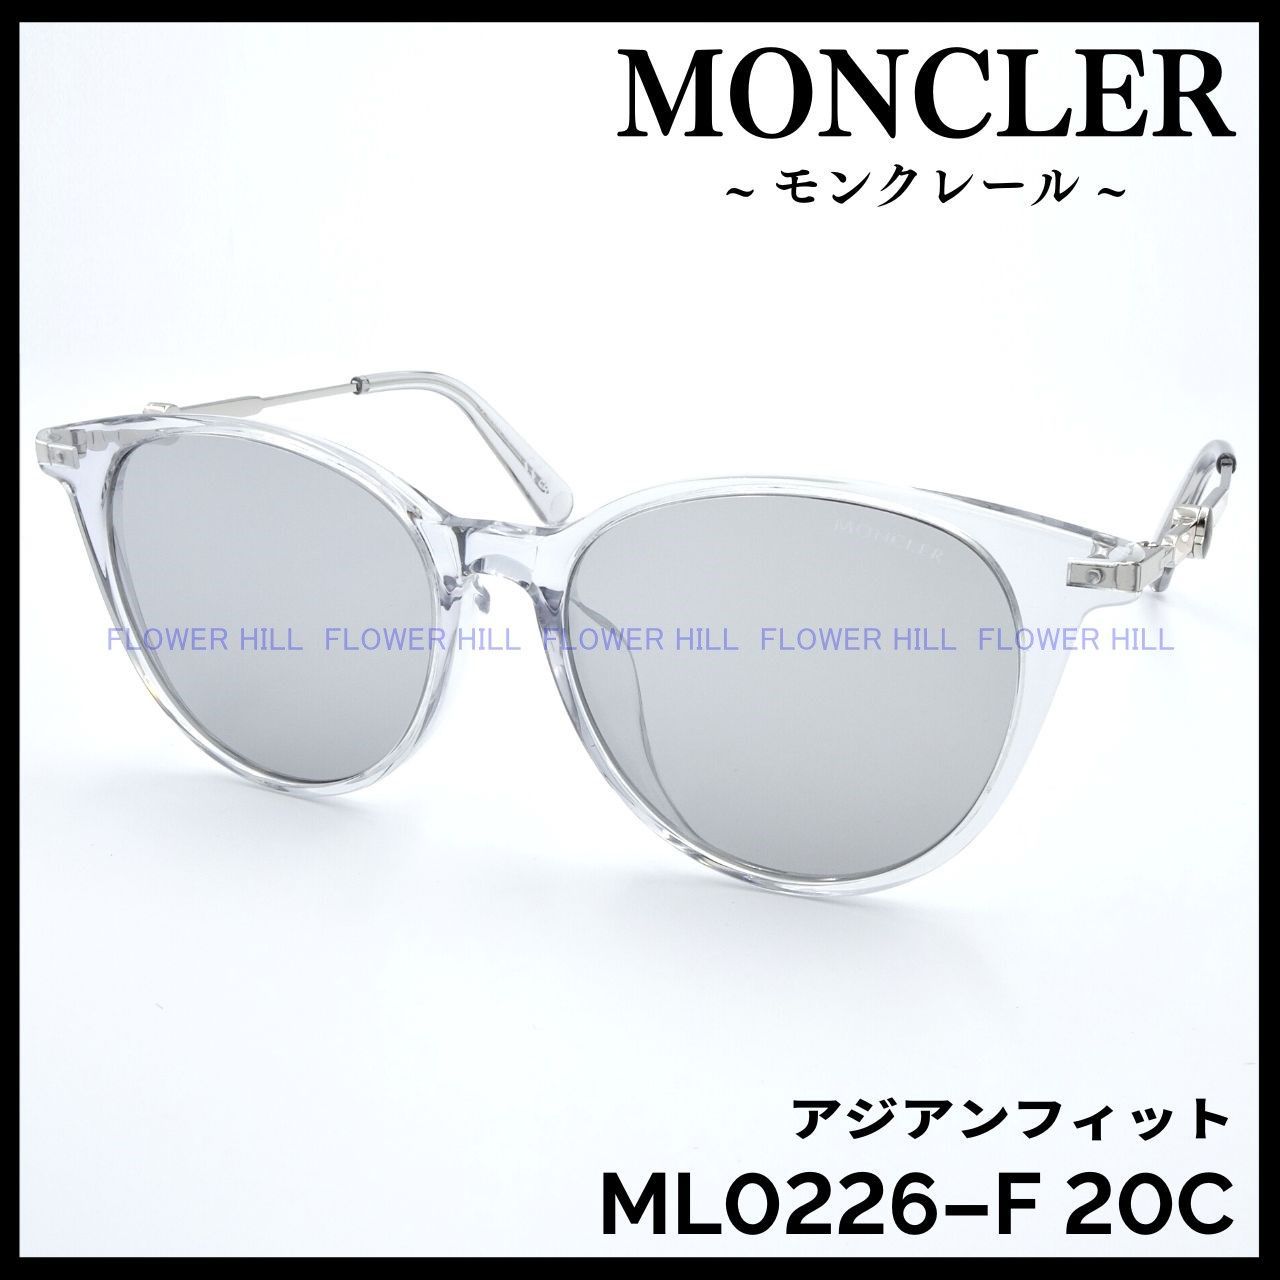 モンクレール ML0226-F 20C サングラス クリアー アジアンフィット